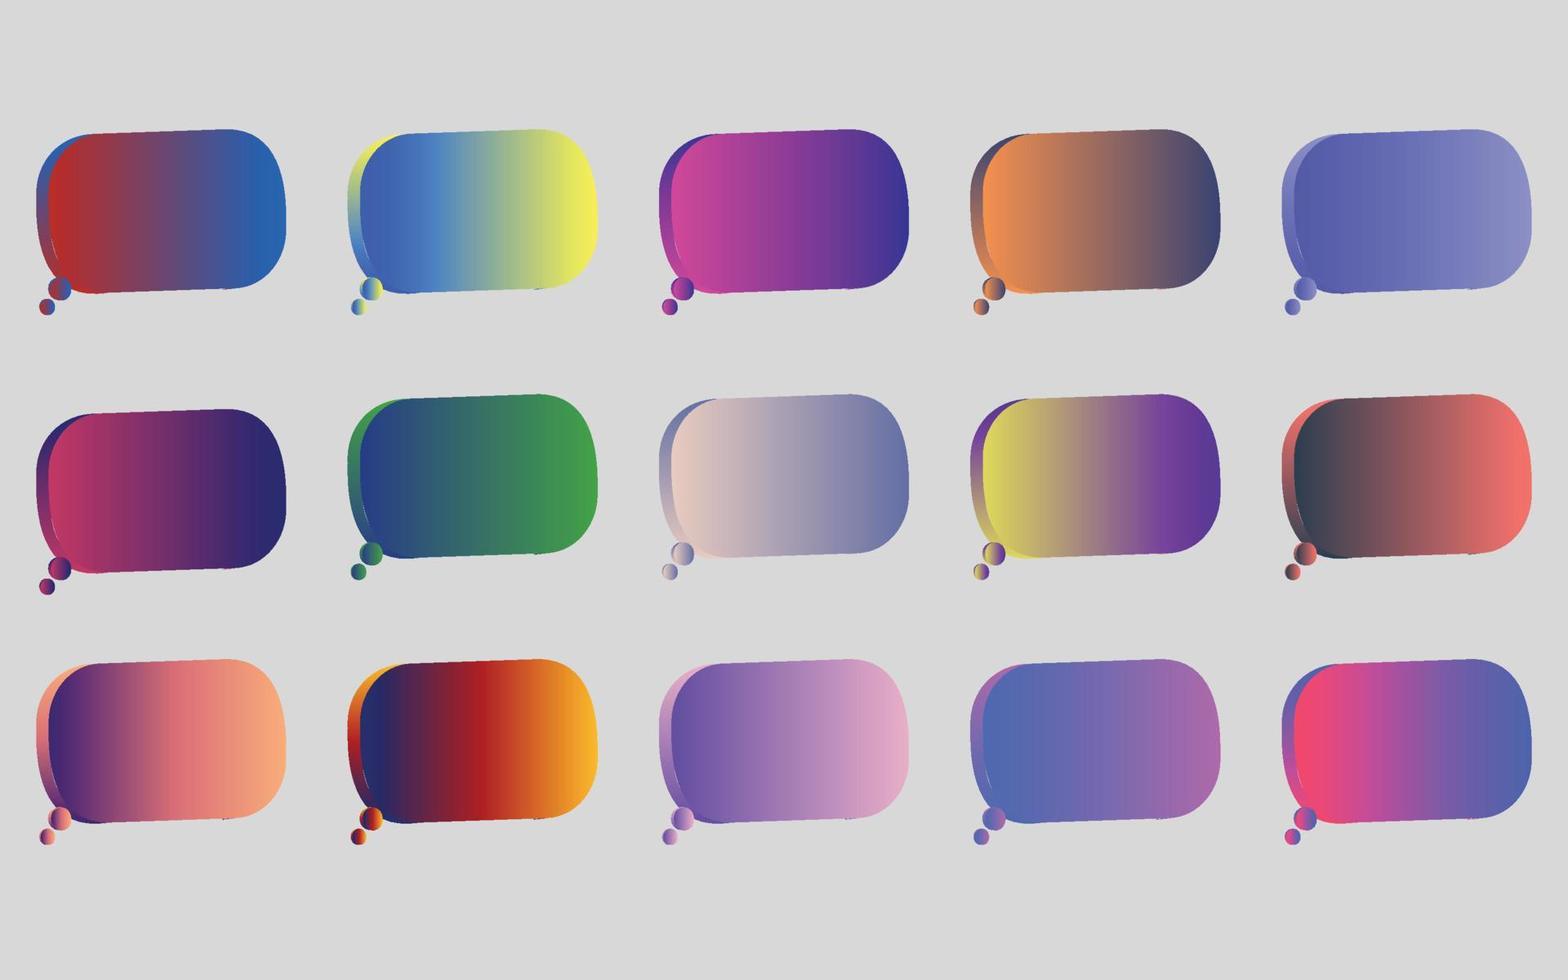 mega conjunto de fondo de color degradados de colores vibrantes vector